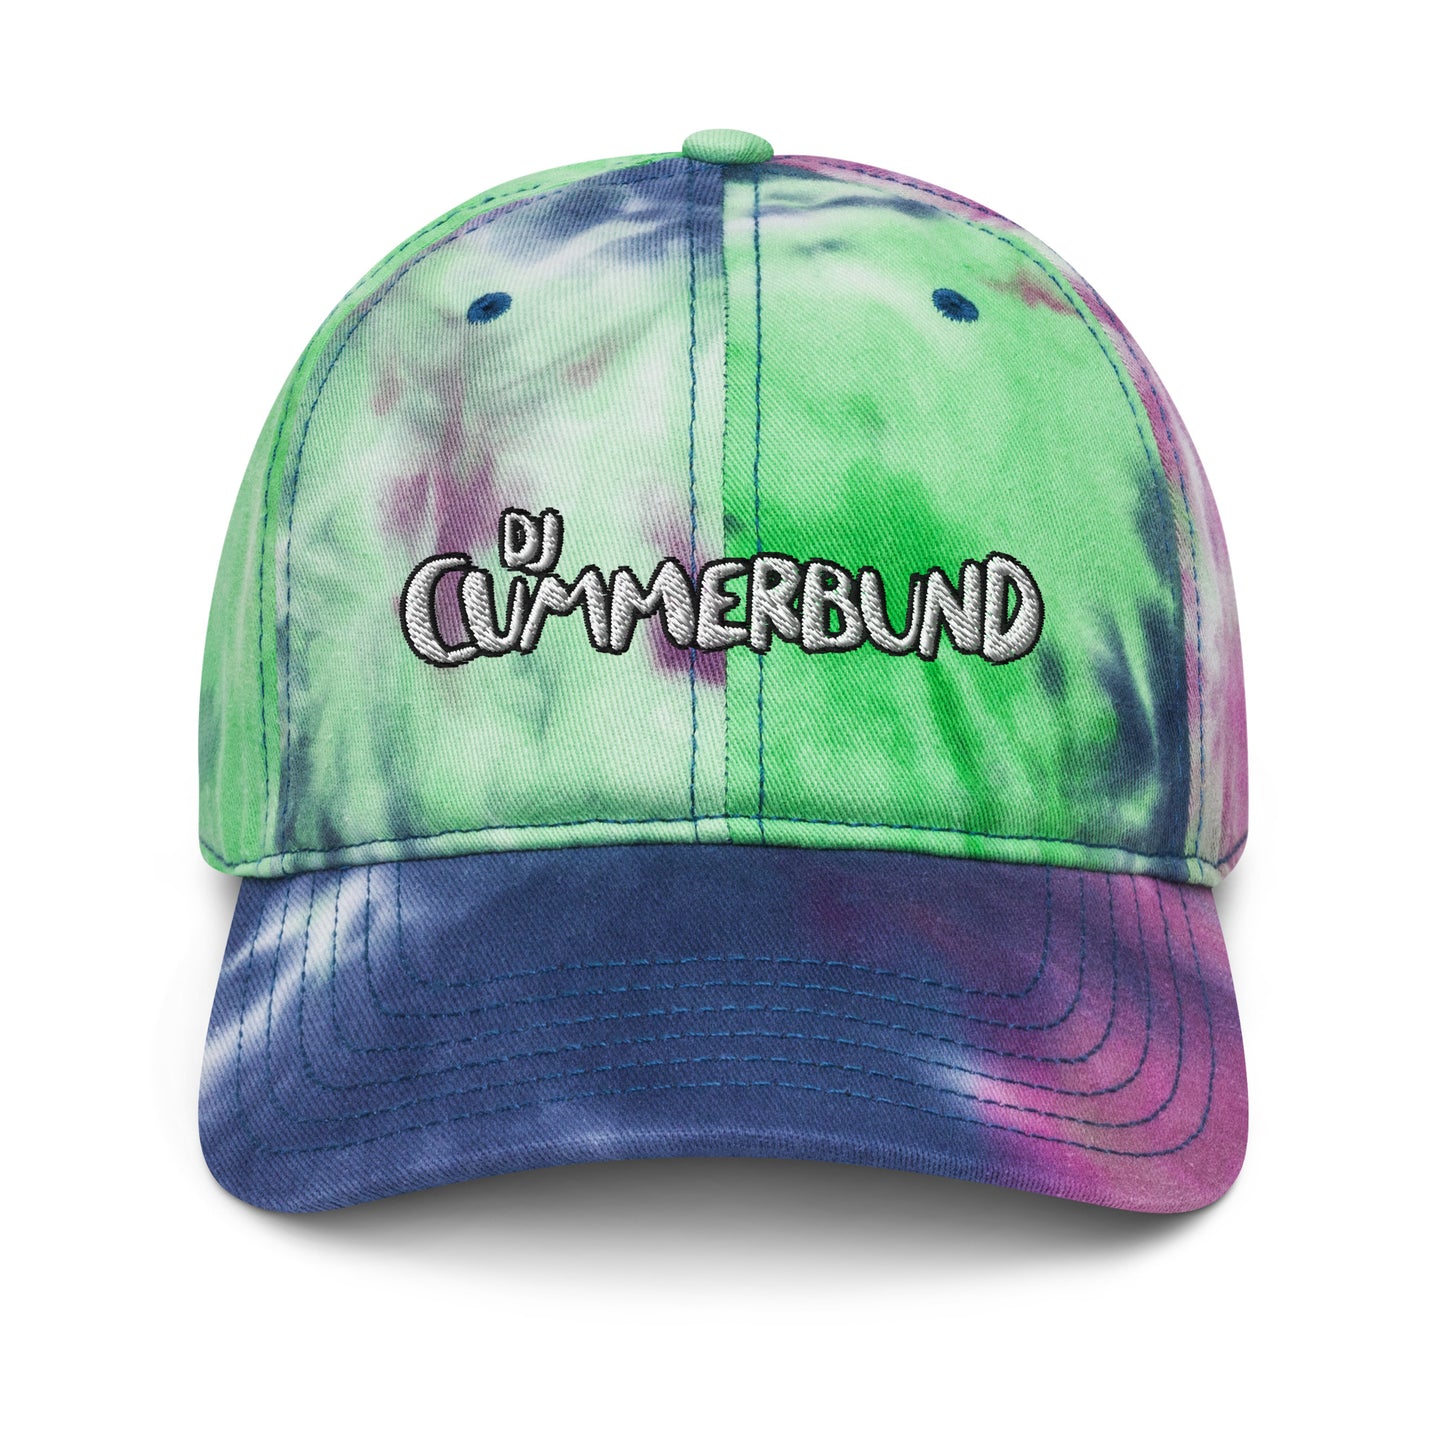 DJ Cummerbund Tie Dye Hat